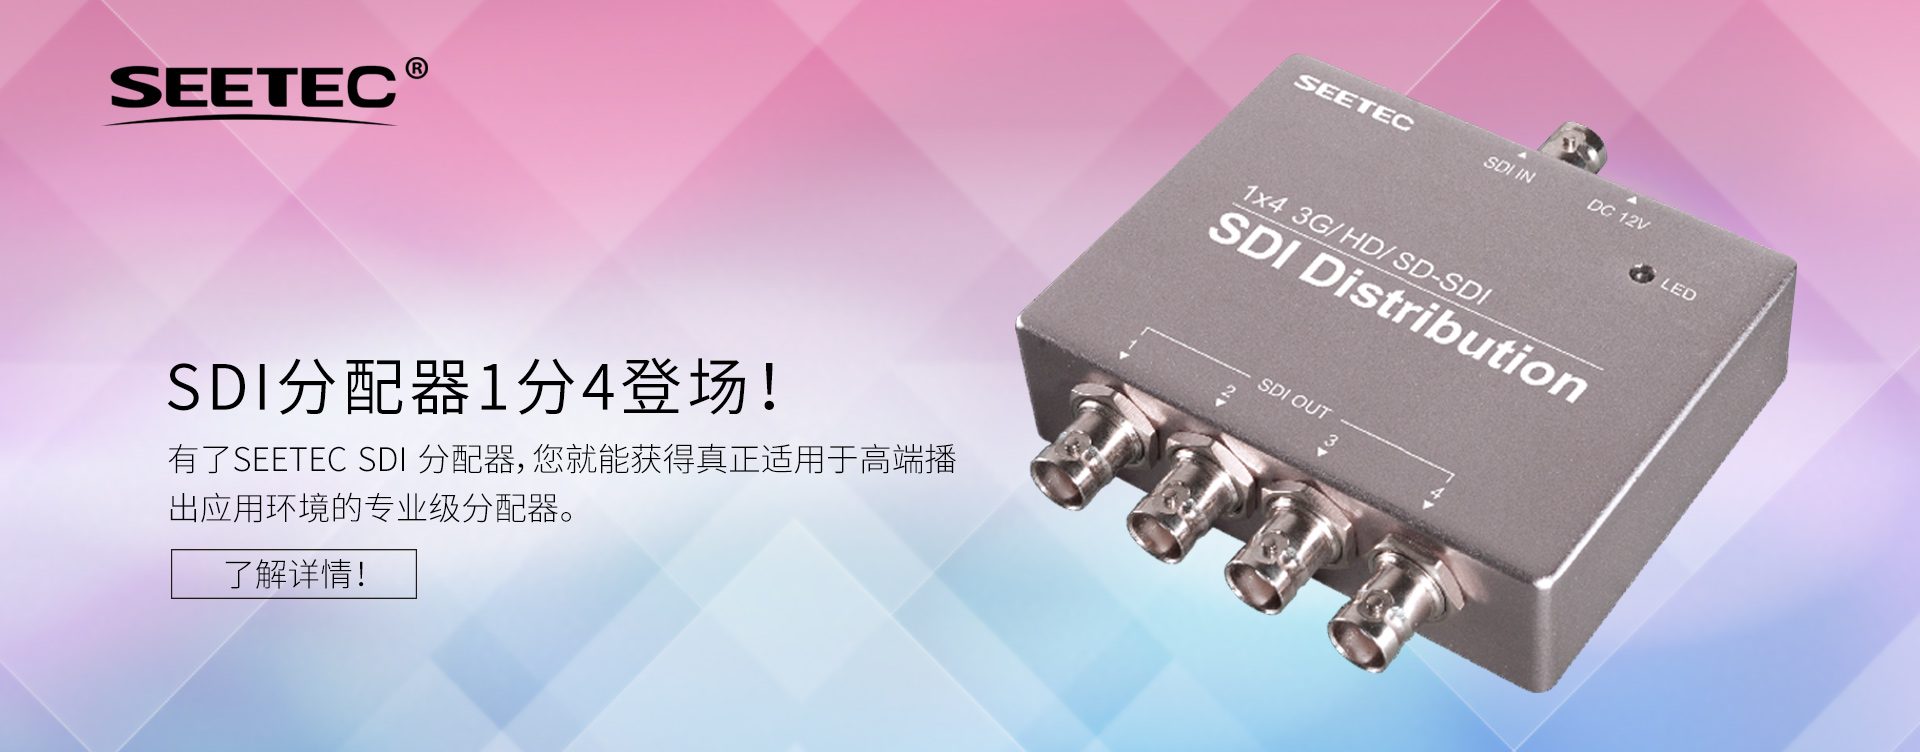 HD-SDI 分配器 SDI信号分配器-